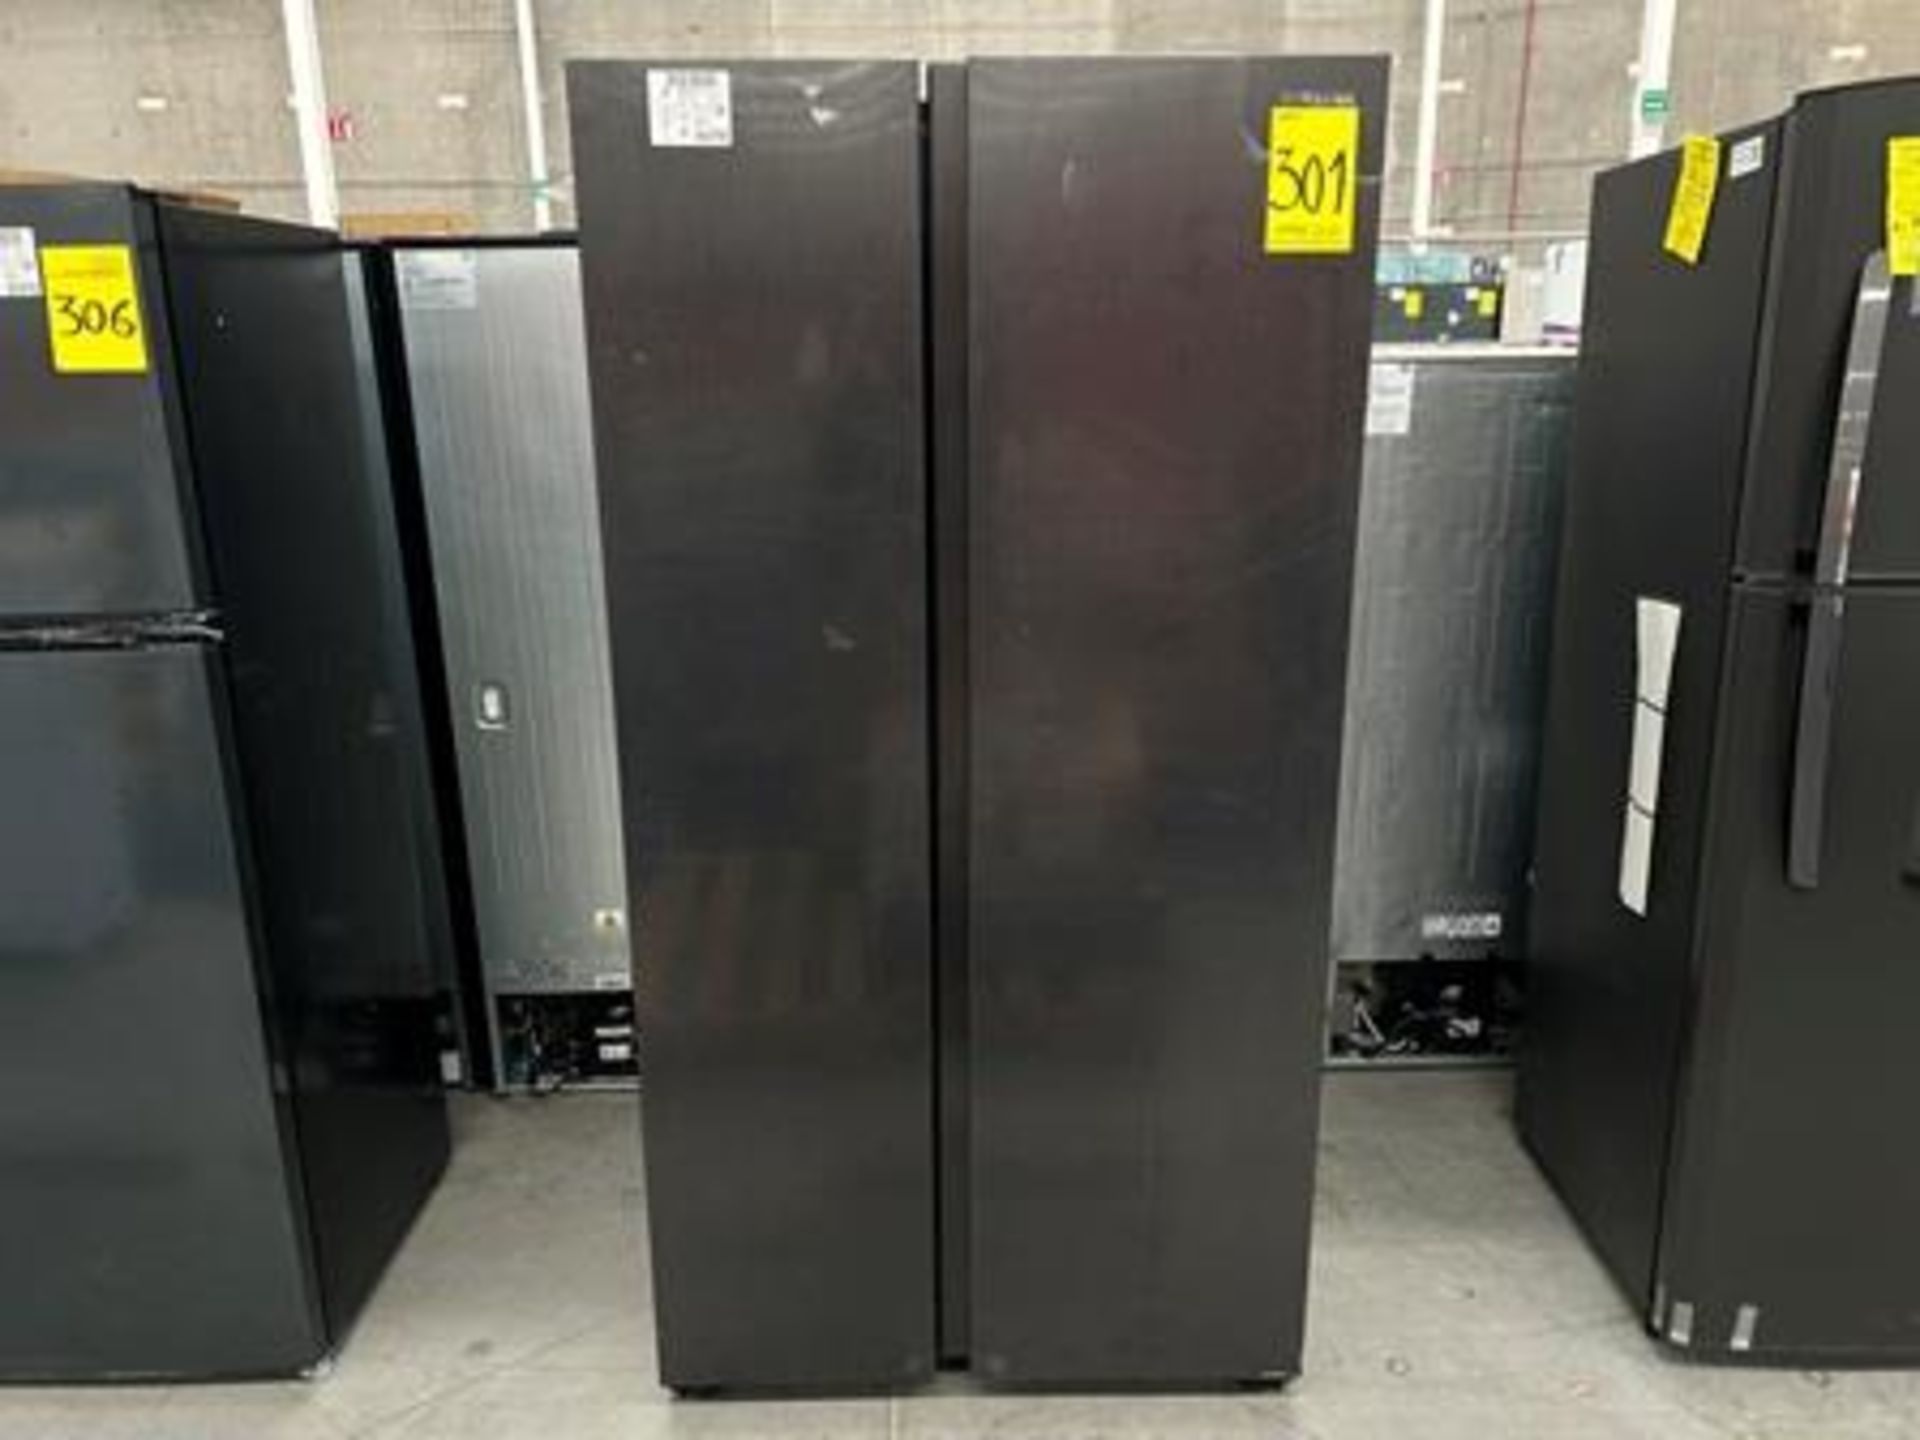 1 refrigerador Marca SAMSUNG, Modelo RS28T5B00B2, Serie 0277V, Color NEGRO (Equipo de devolución)